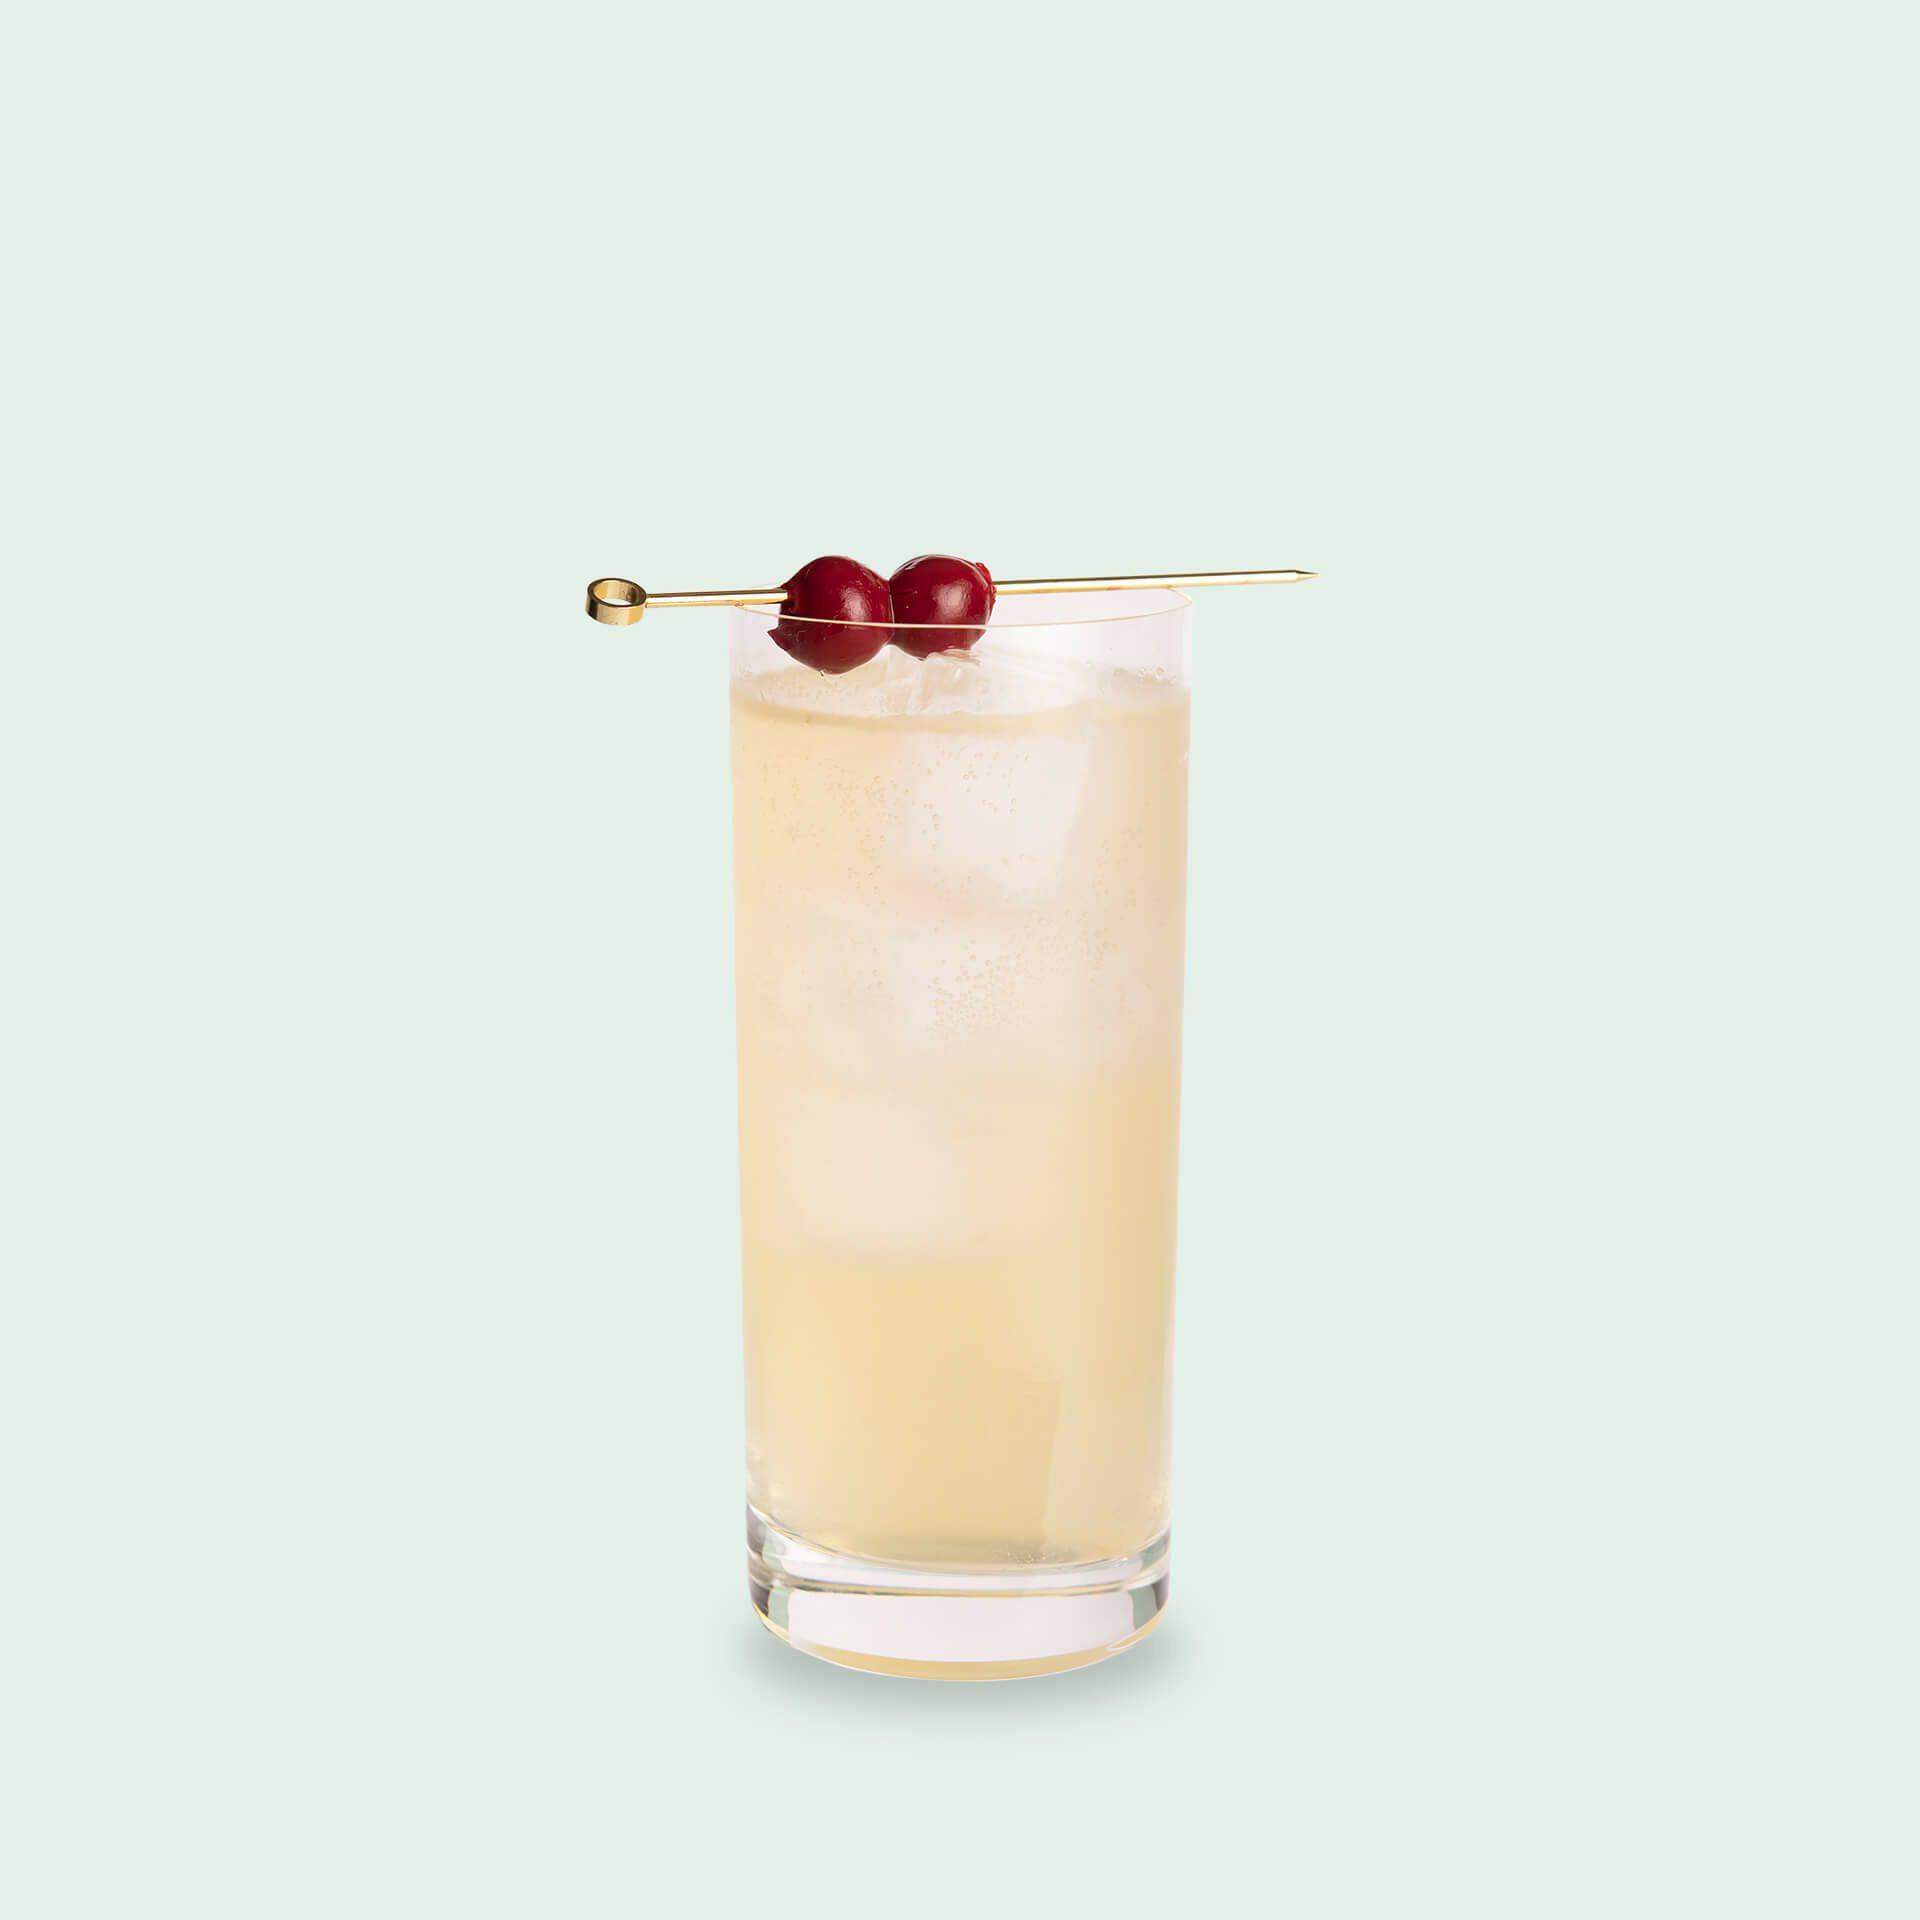 Straits Sling - Historisches Gin Rezept - Gin Cocktails von Oliver Ebert